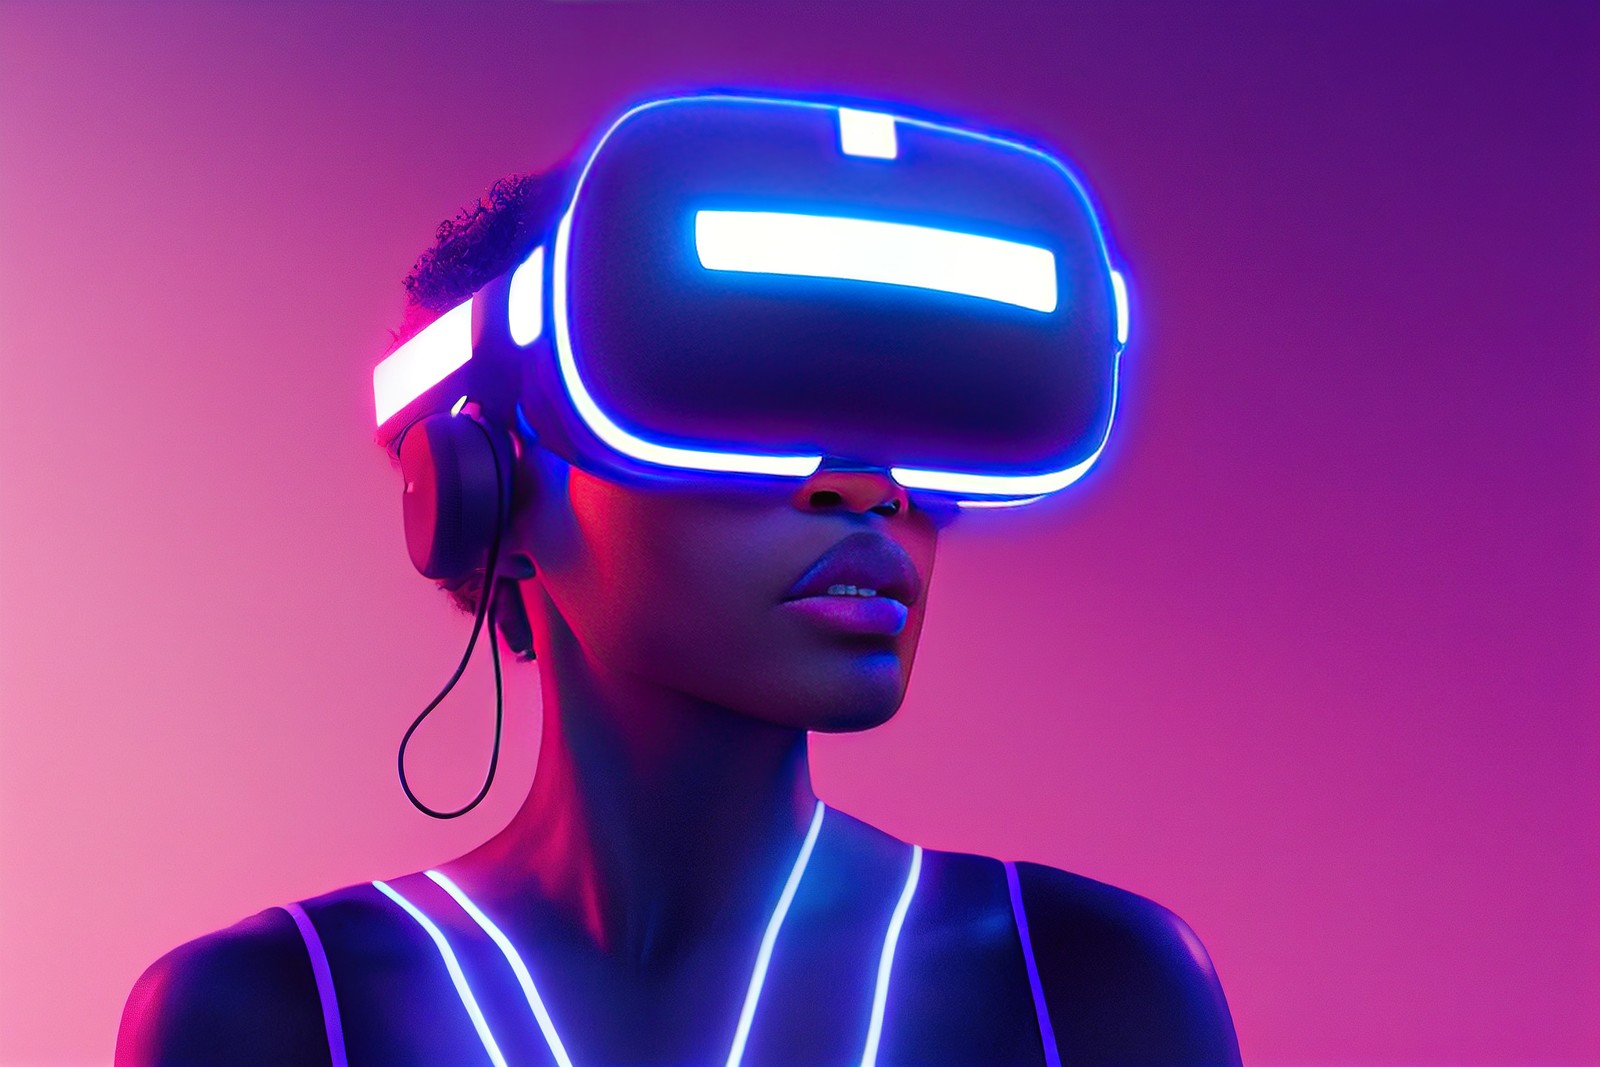 图片展示一位女性戴着虚拟现实头盔和耳机，背景为紫色渐变光效，体现科技感和现代感。